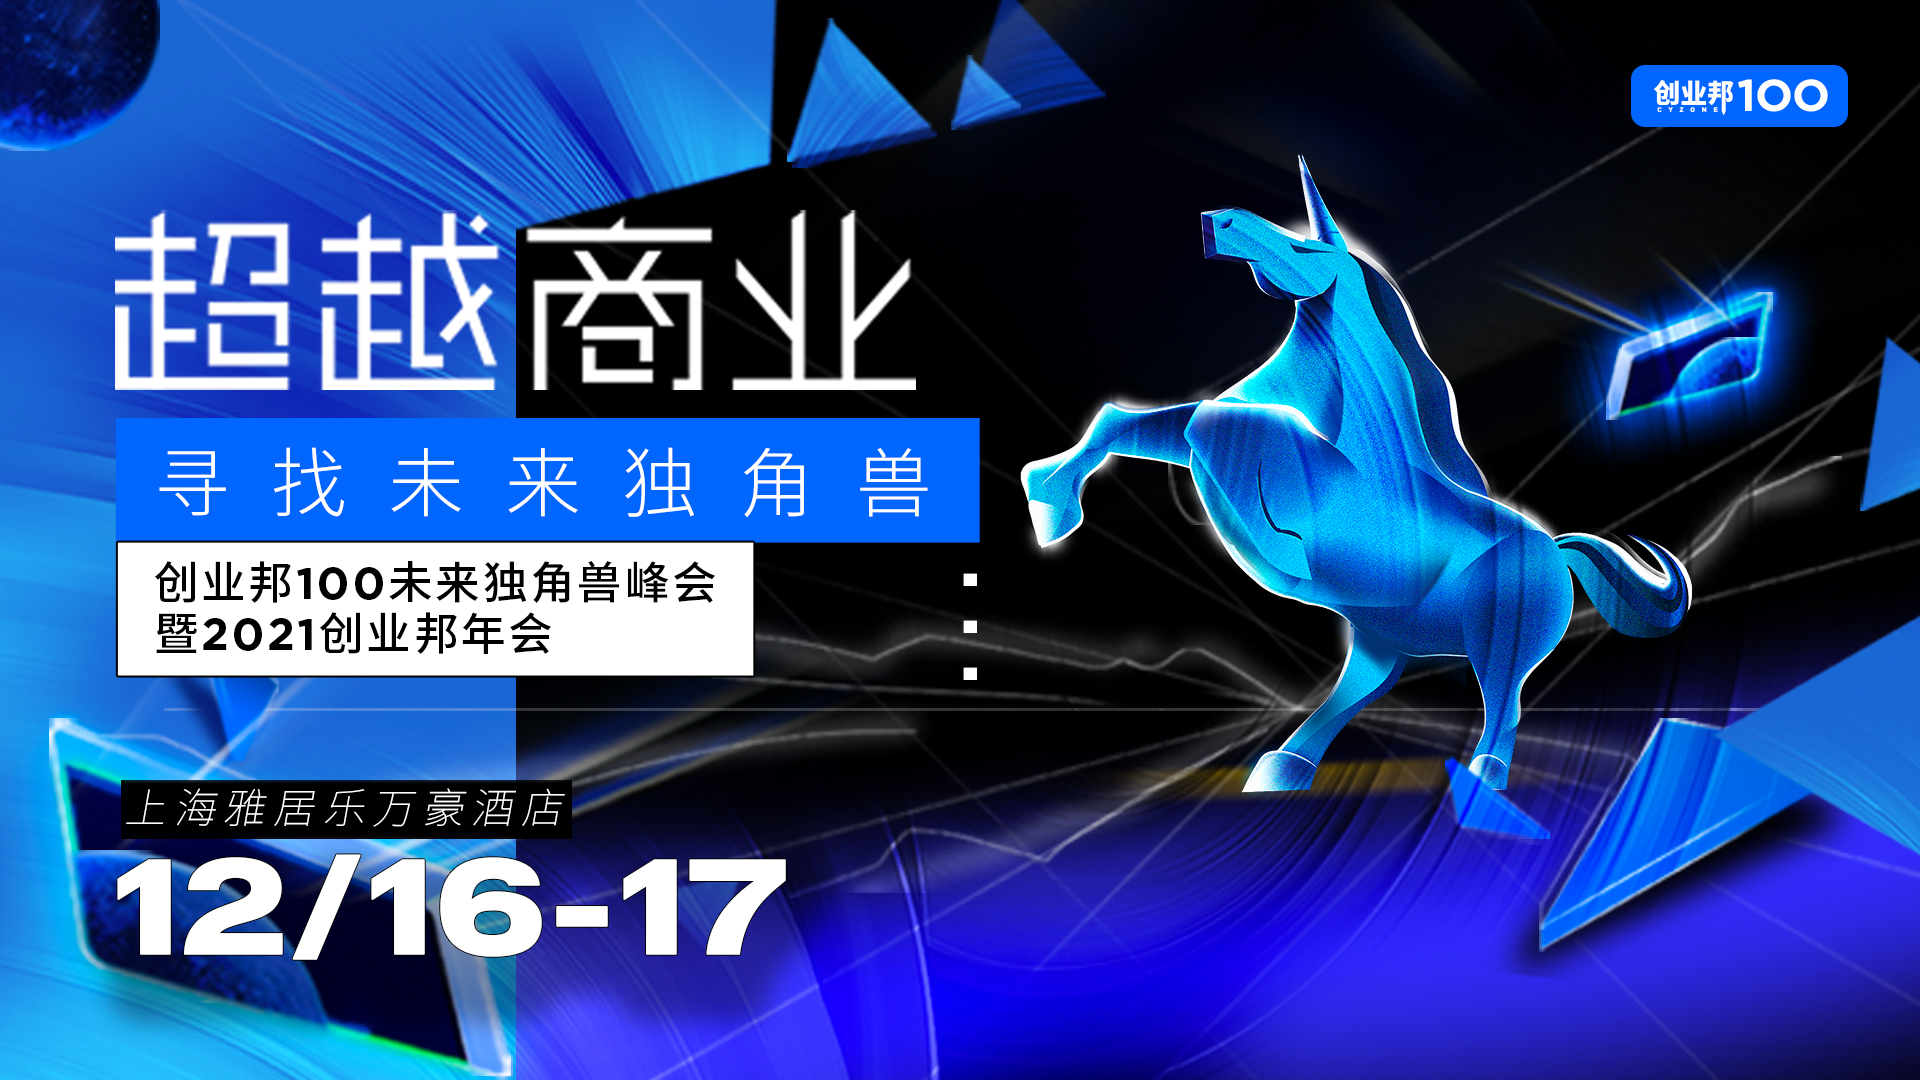 下周上海见！超越商业，创业邦100未来独角兽峰会议程抢先看